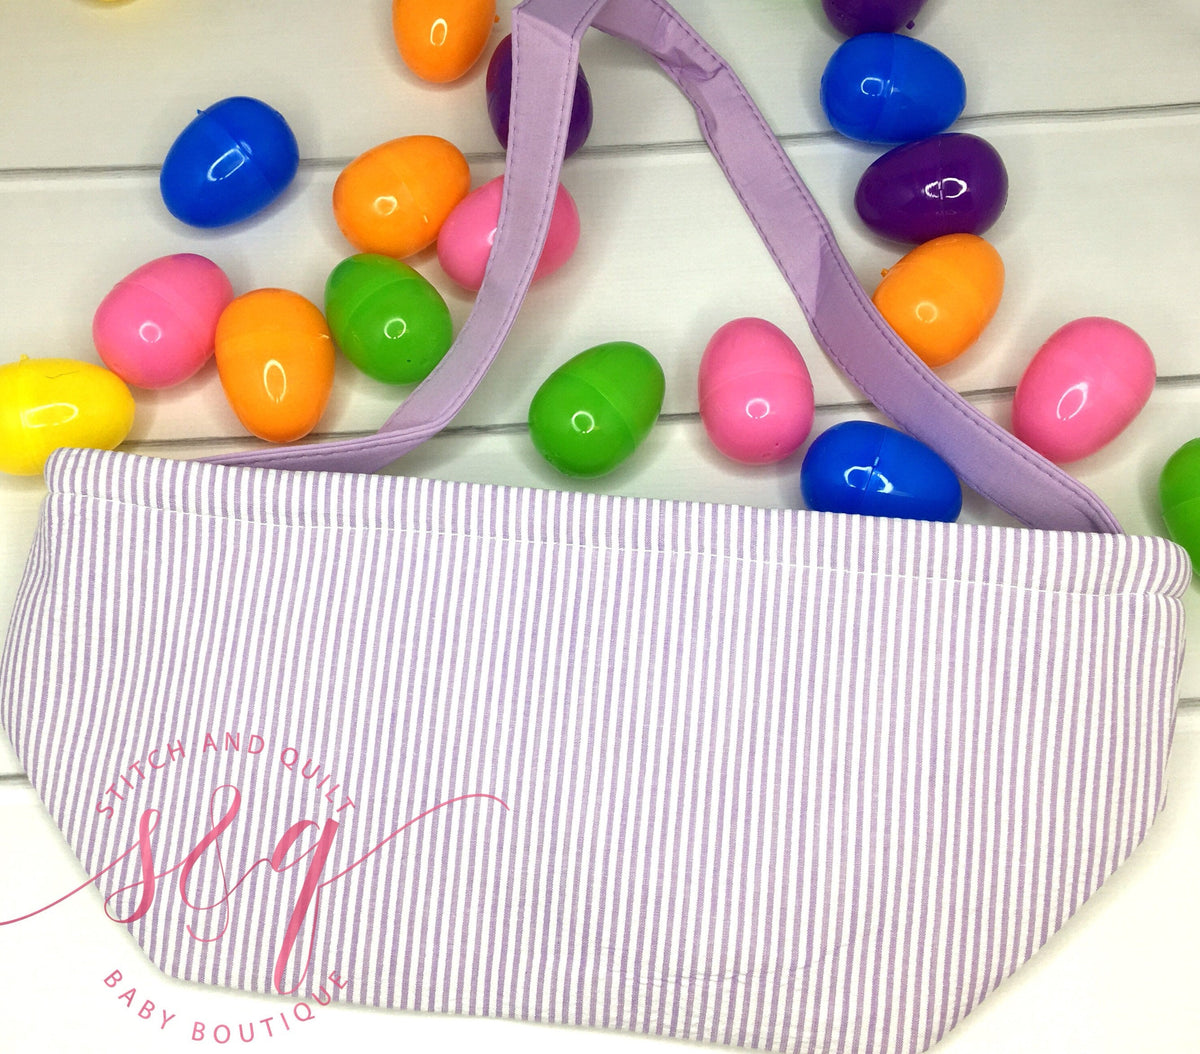 Monogrammed Easter baskets in pink, purple, and blue seersucker, seersucker Easter baskets personalized, seersucker tote bags monogrammed